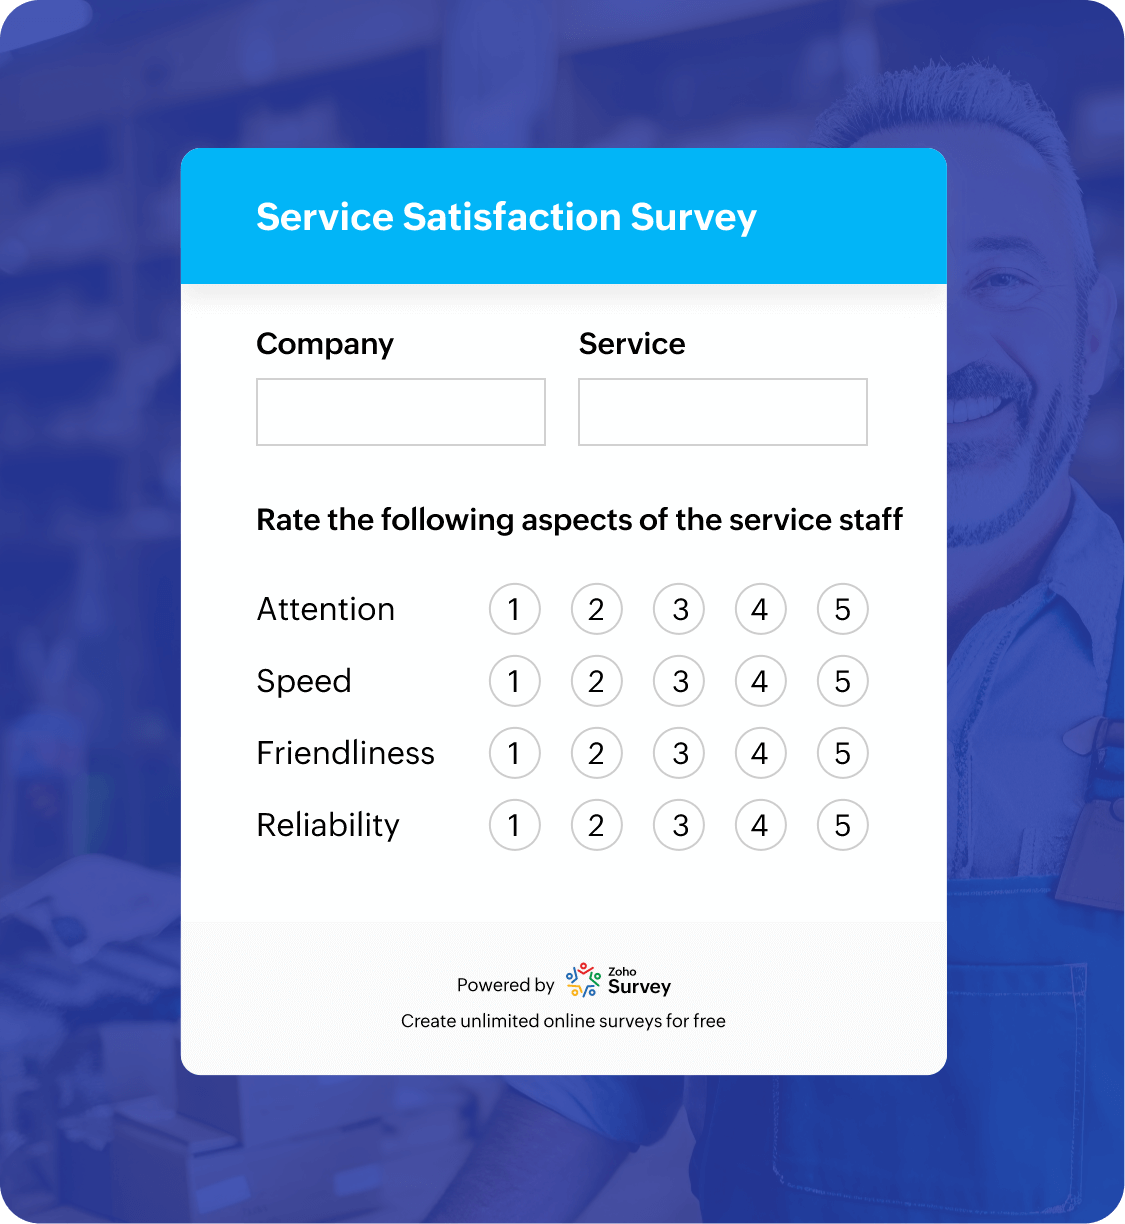 Service satisfaction survey questionnaire template